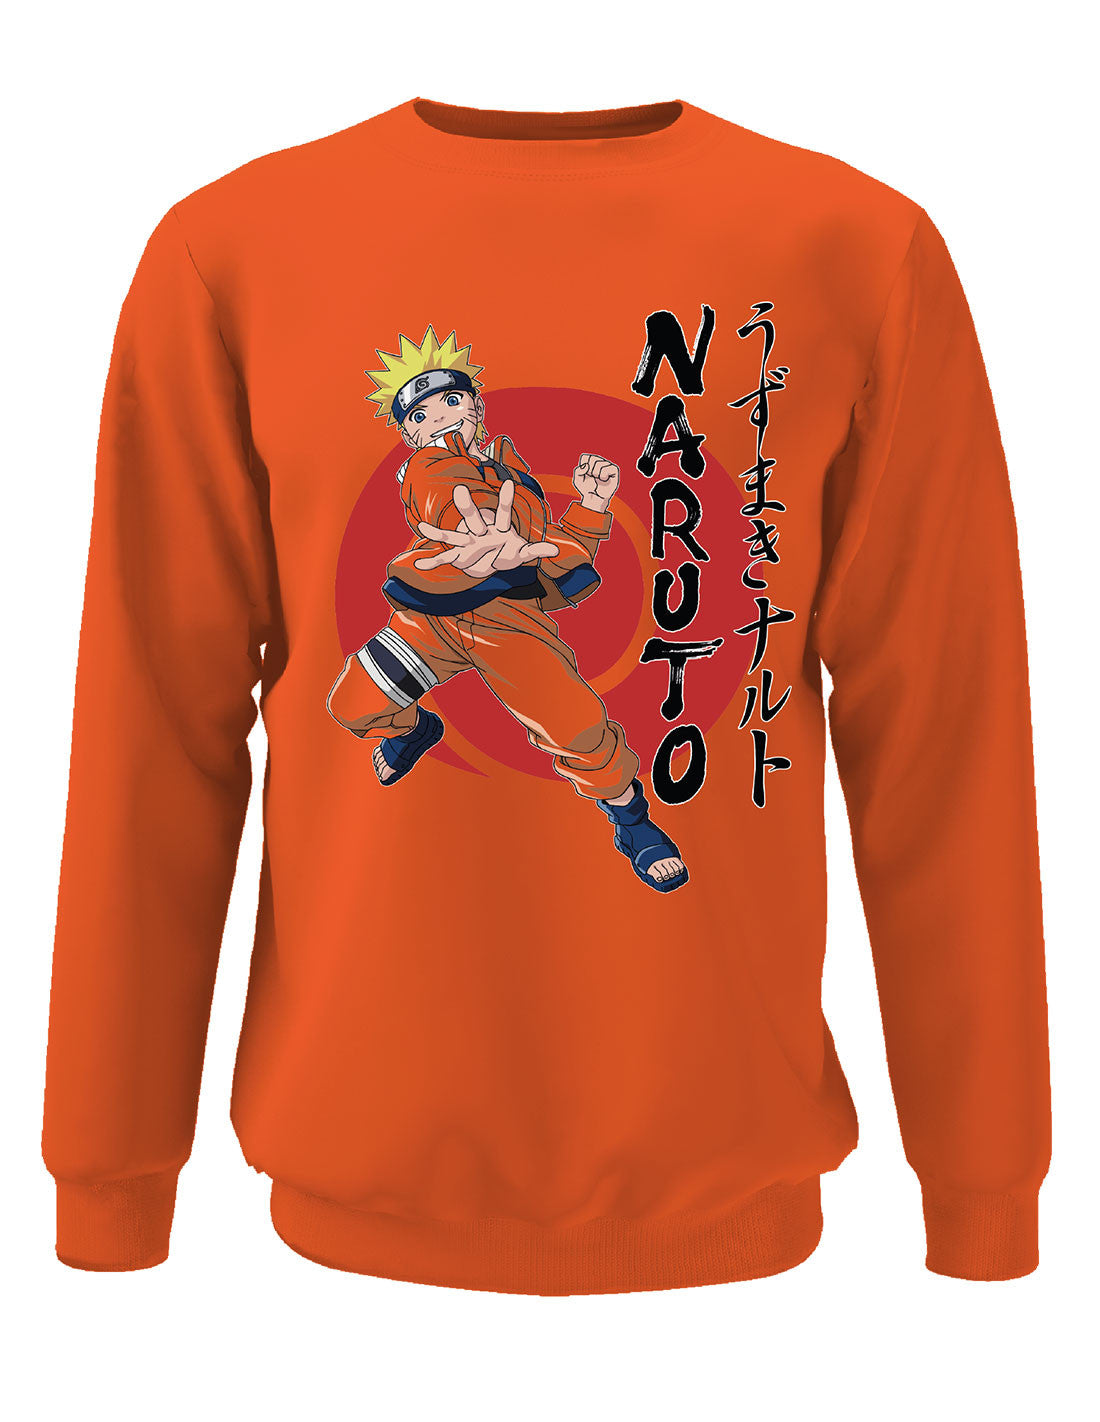 Naruto Sweatshirt - Attack